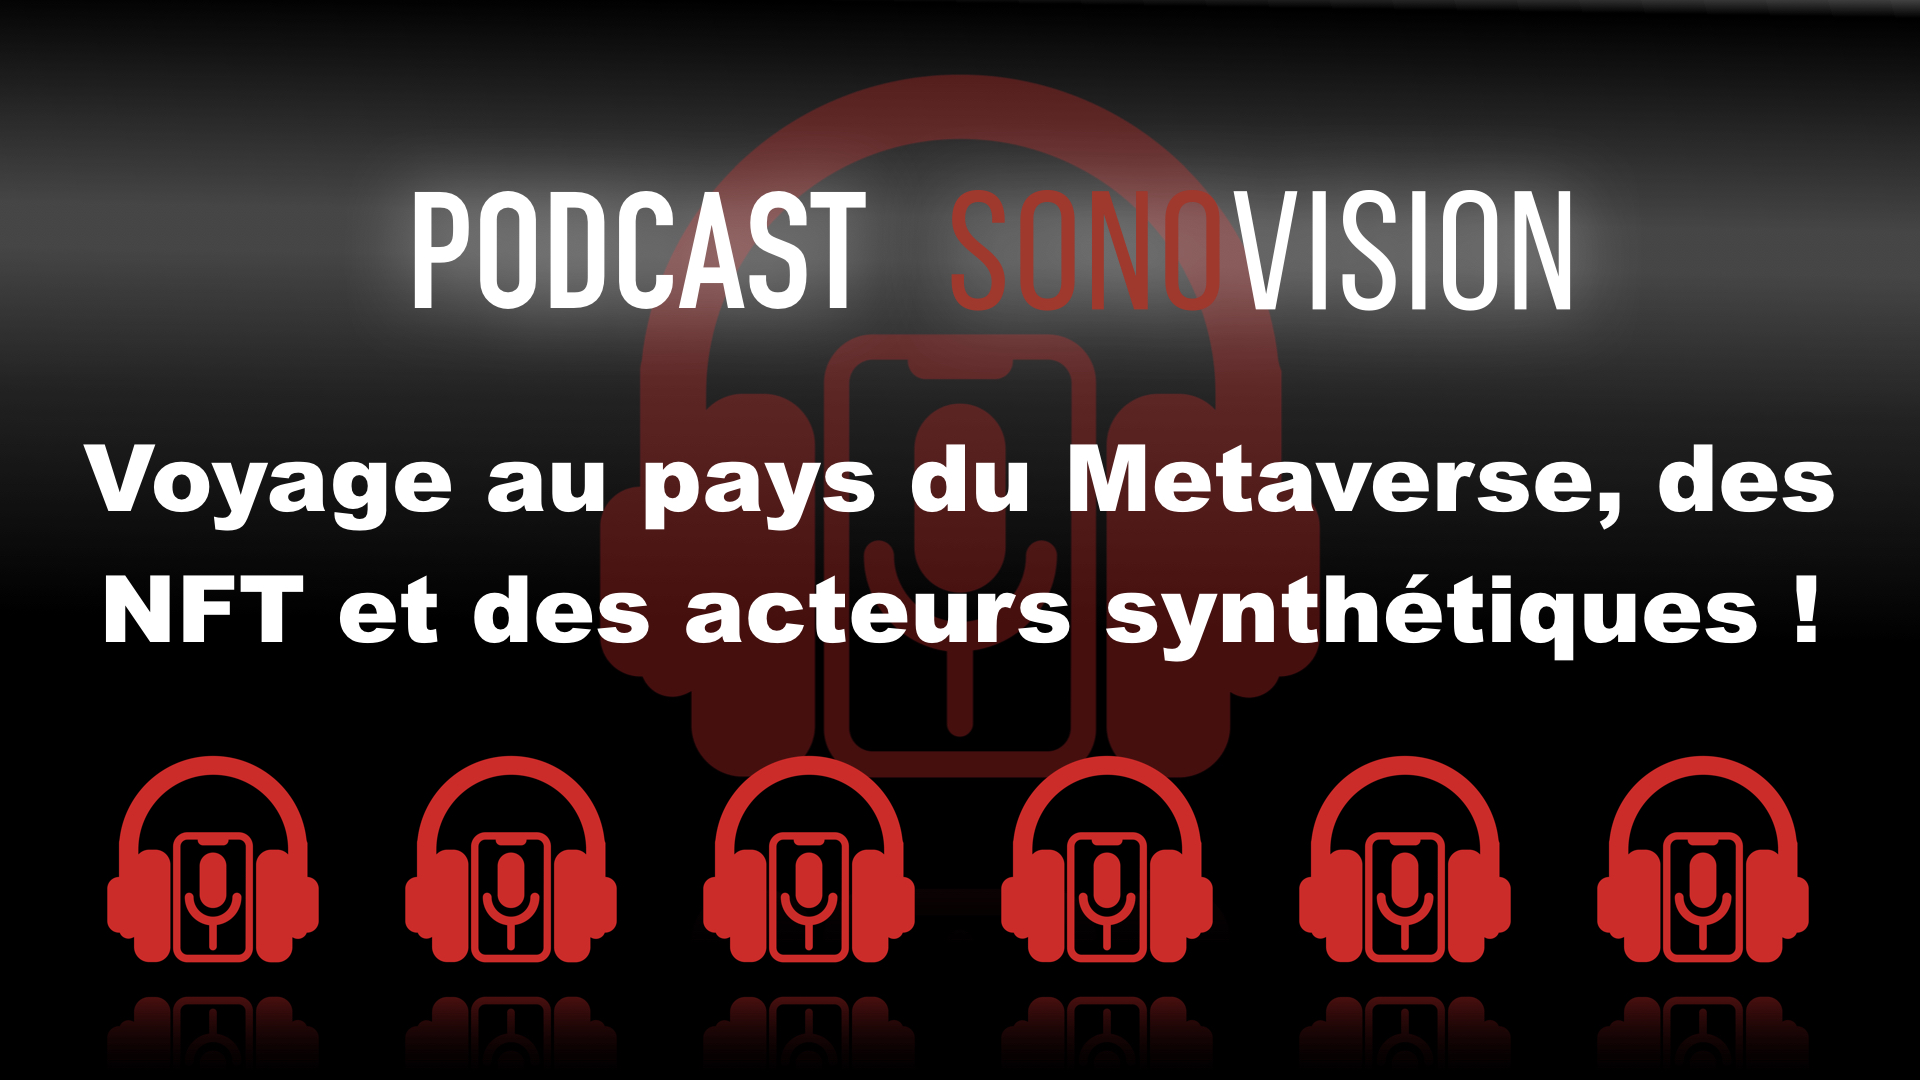 Metaverse, NFT and syntax acteurs au menu du Podcast de la semaine!